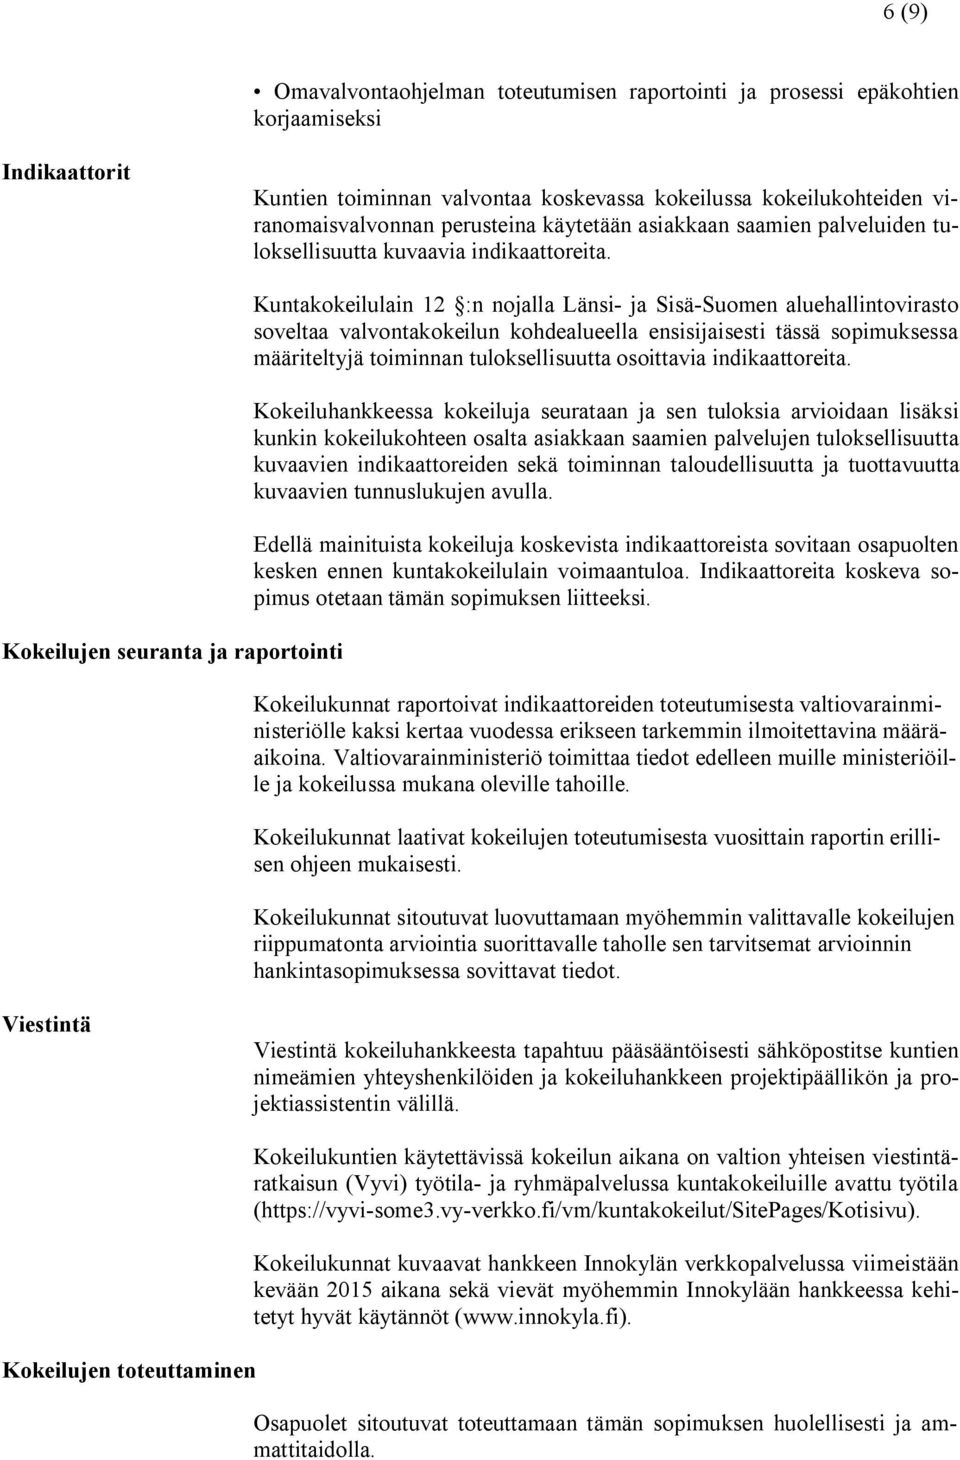 Kokeilujen seuranta ja raportointi Kuntakokeilulain 12 :n nojalla Länsi- ja Sisä-Suomen aluehallintovirasto soveltaa valvontakokeilun kohdealueella ensisijaisesti tässä sopimuksessa määriteltyjä